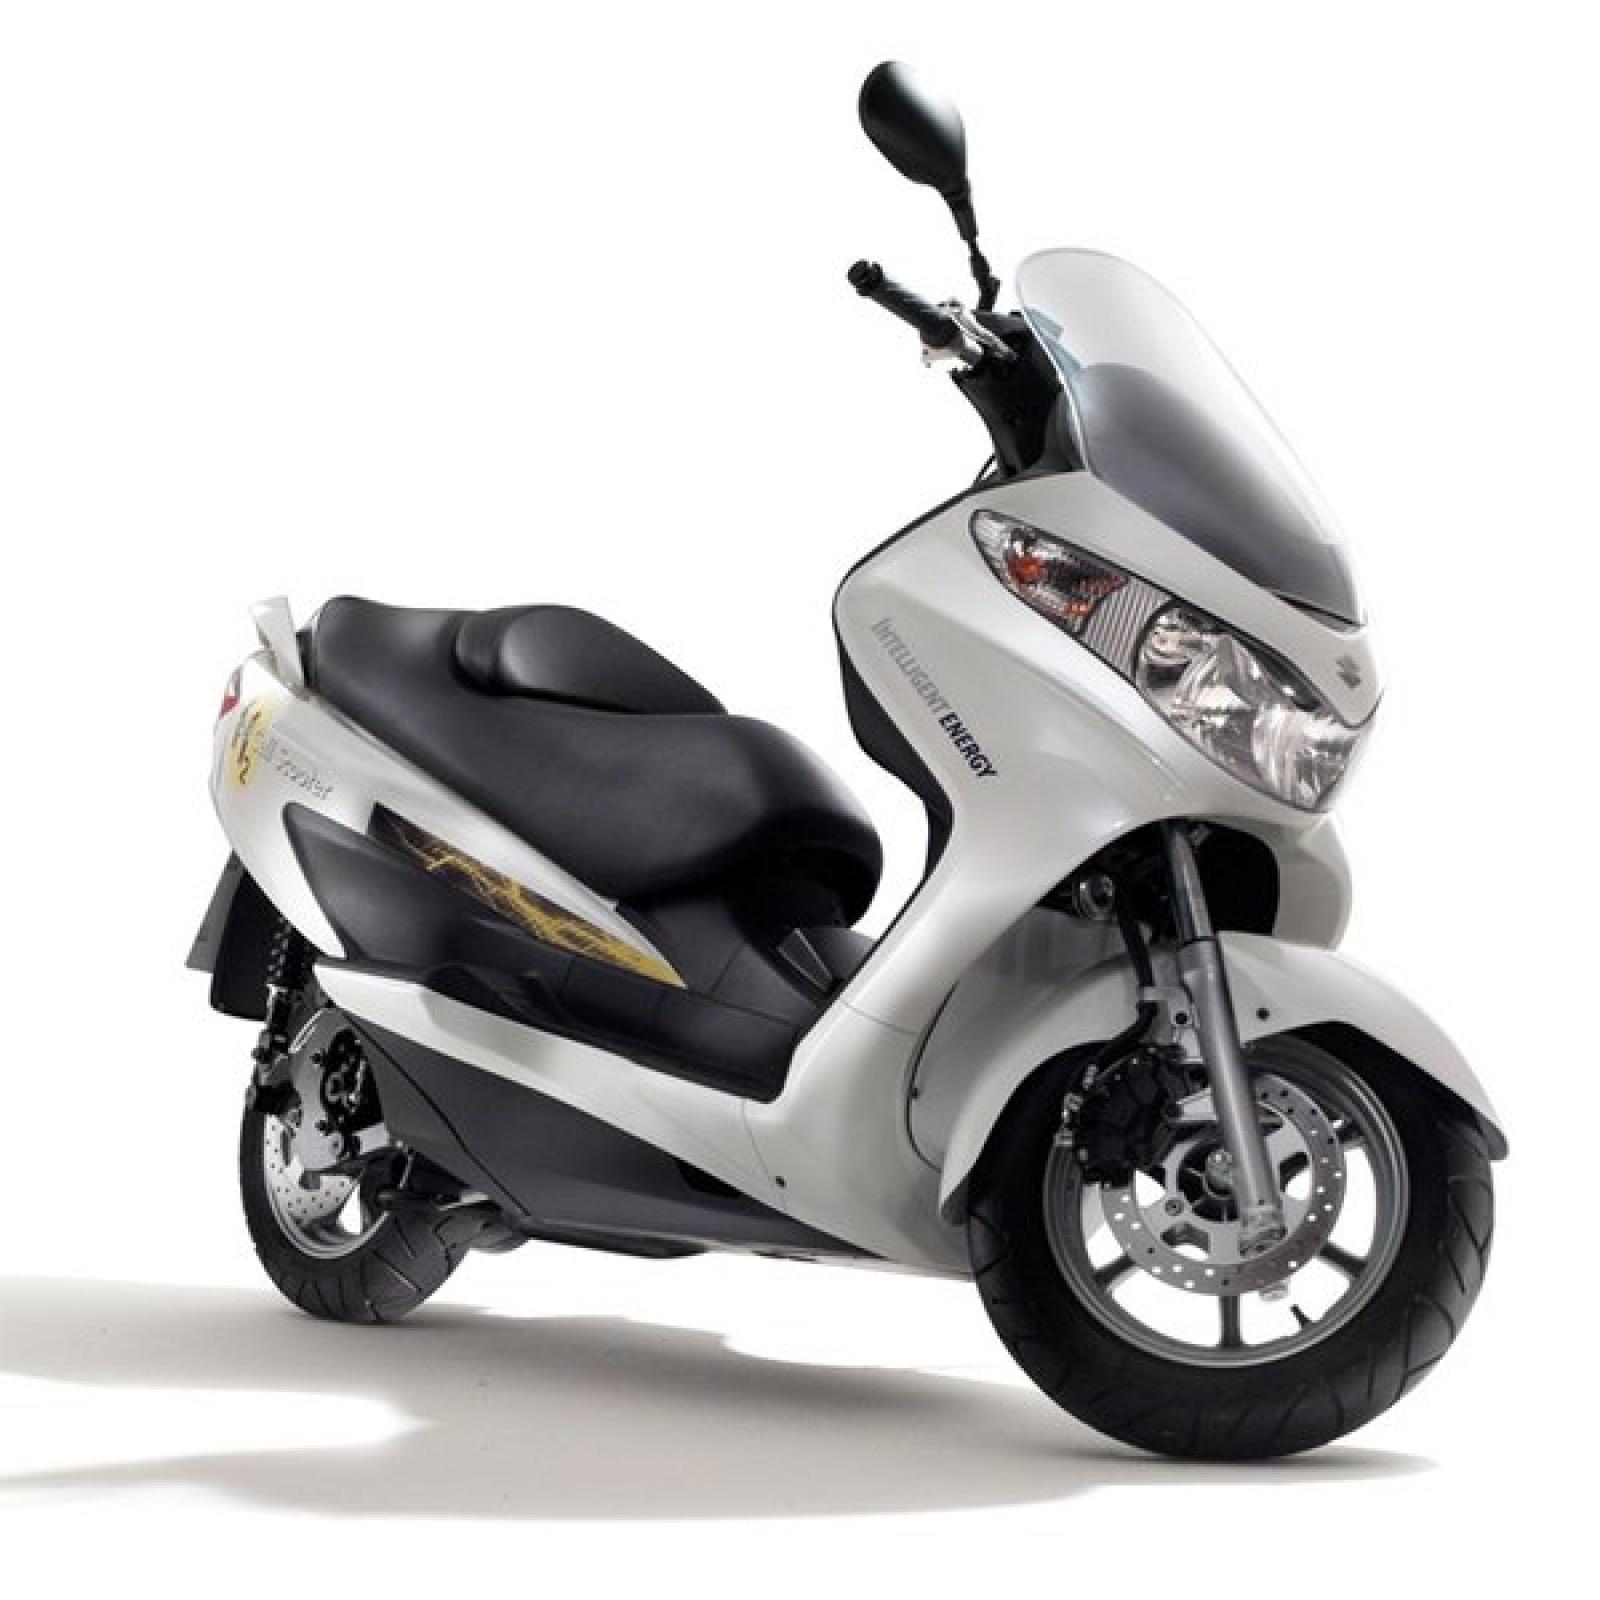 Каталог скутеров Suzuki — все модели с основными данными